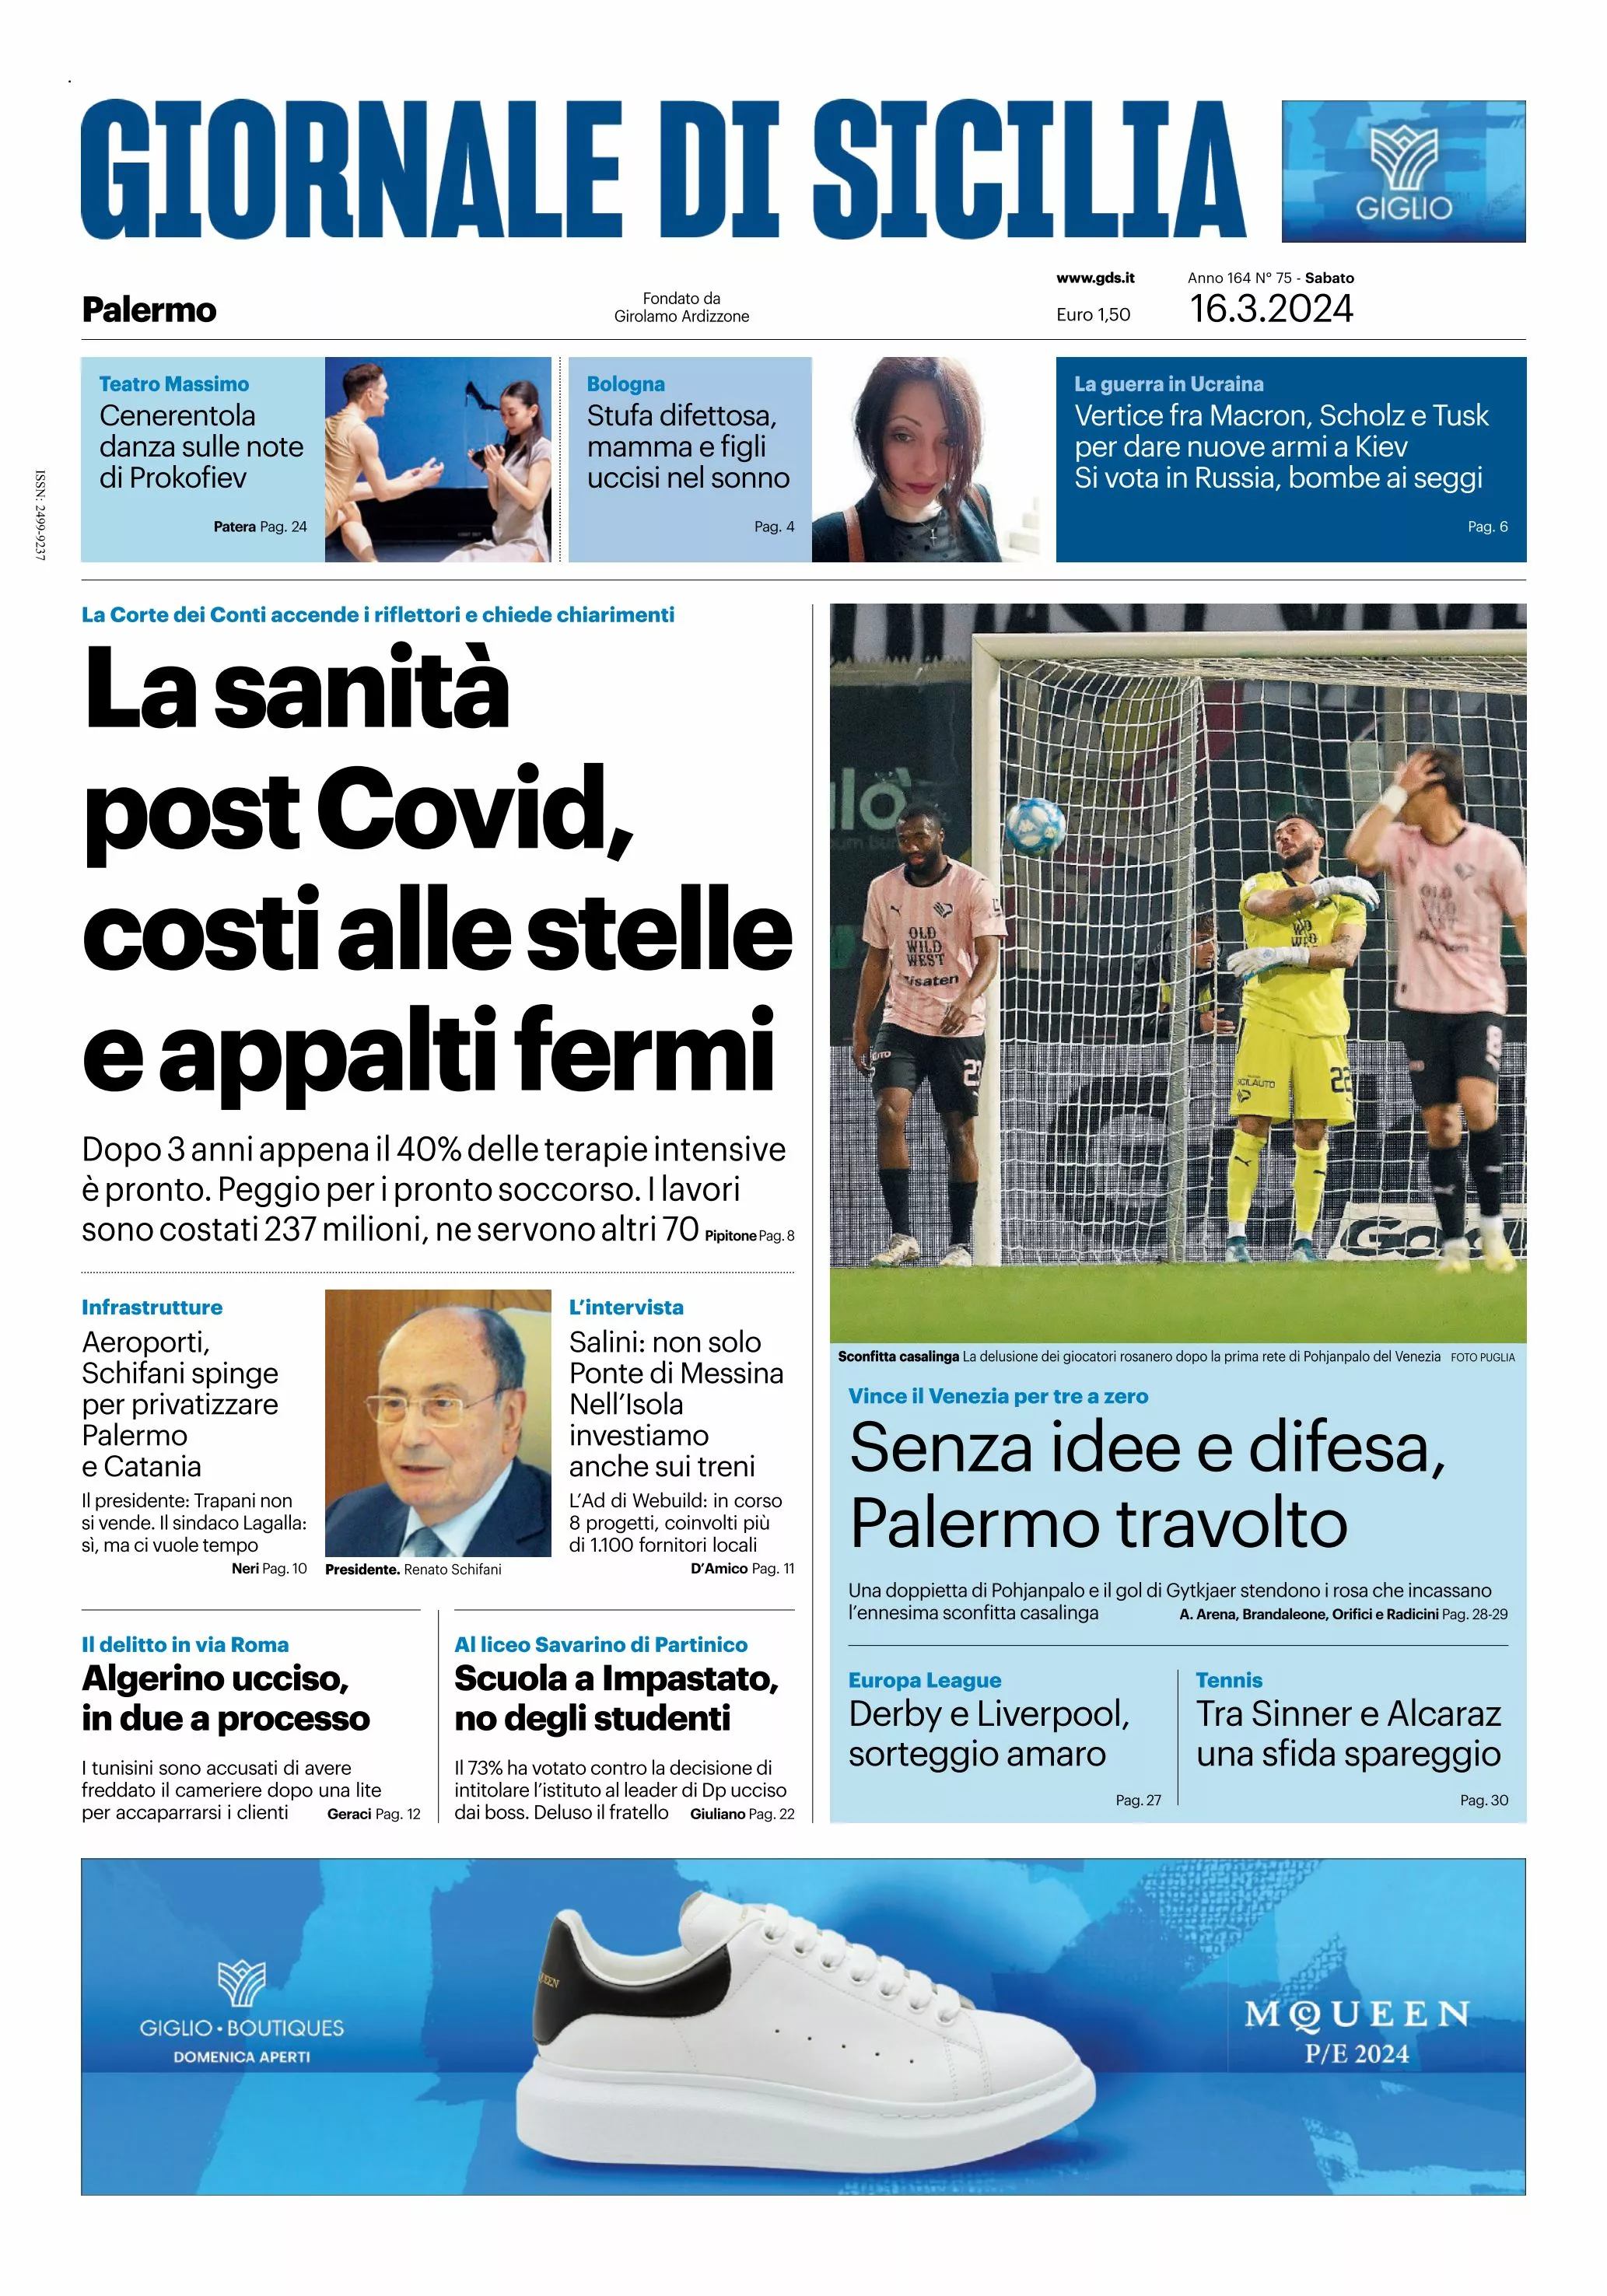 Prima-pagina-giornale-di-sicilia-edizione-palermo-di-oggi-17-03-24